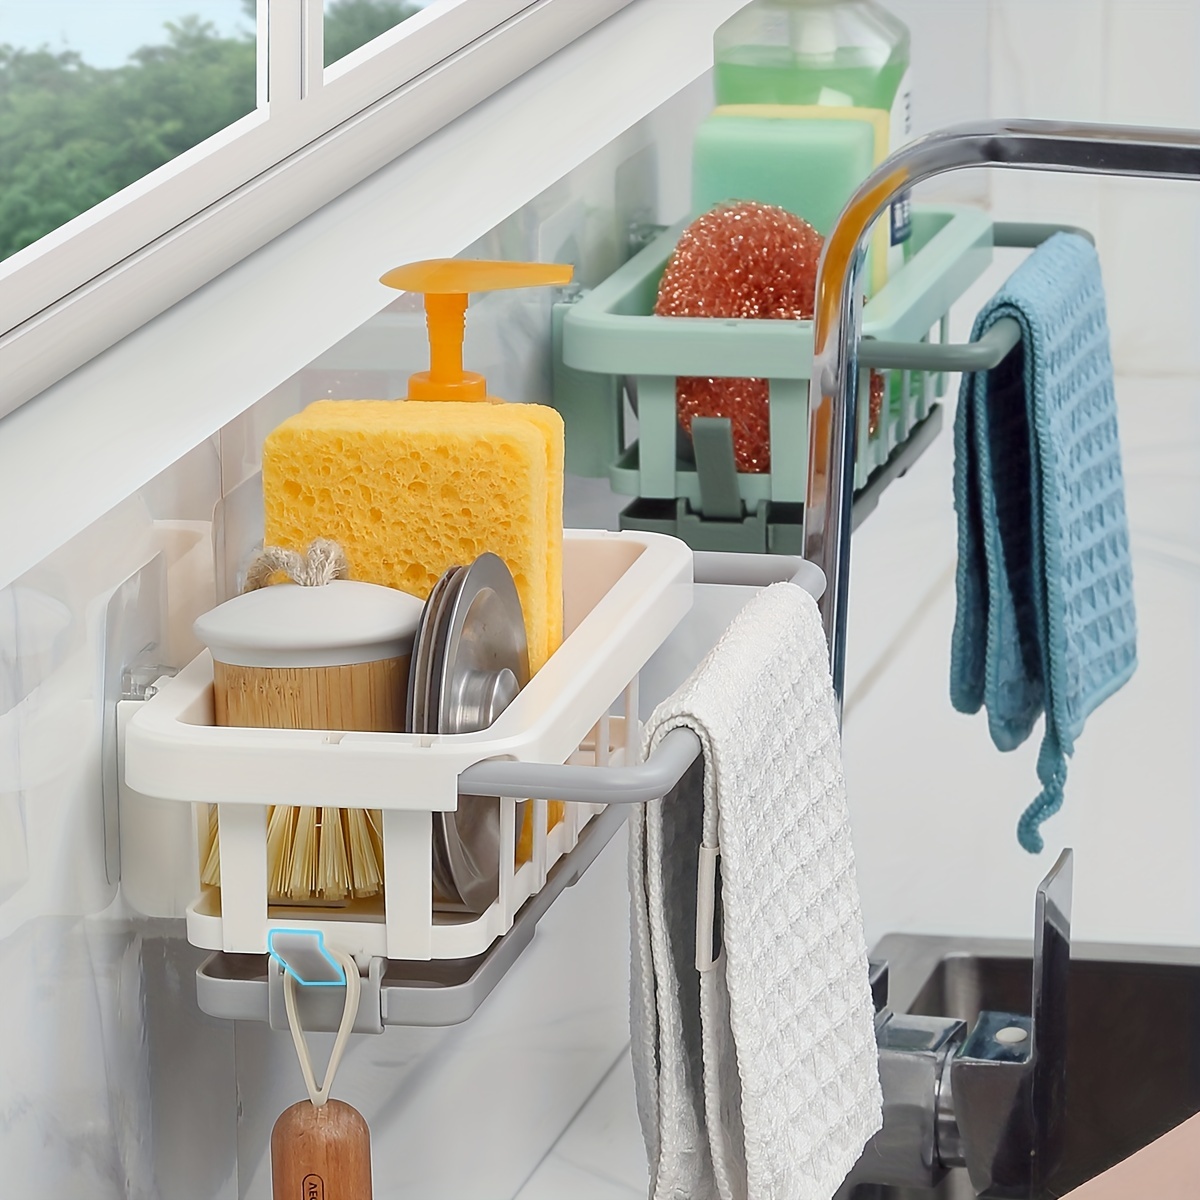  VANTEN Kitchen Sink Caddy Sponge Holder Sink Organizer, Sink  Tray Drainer Rack, Soap Dish Dispenser Brush Holder Storage Accessories  -Countertop or Adhesive